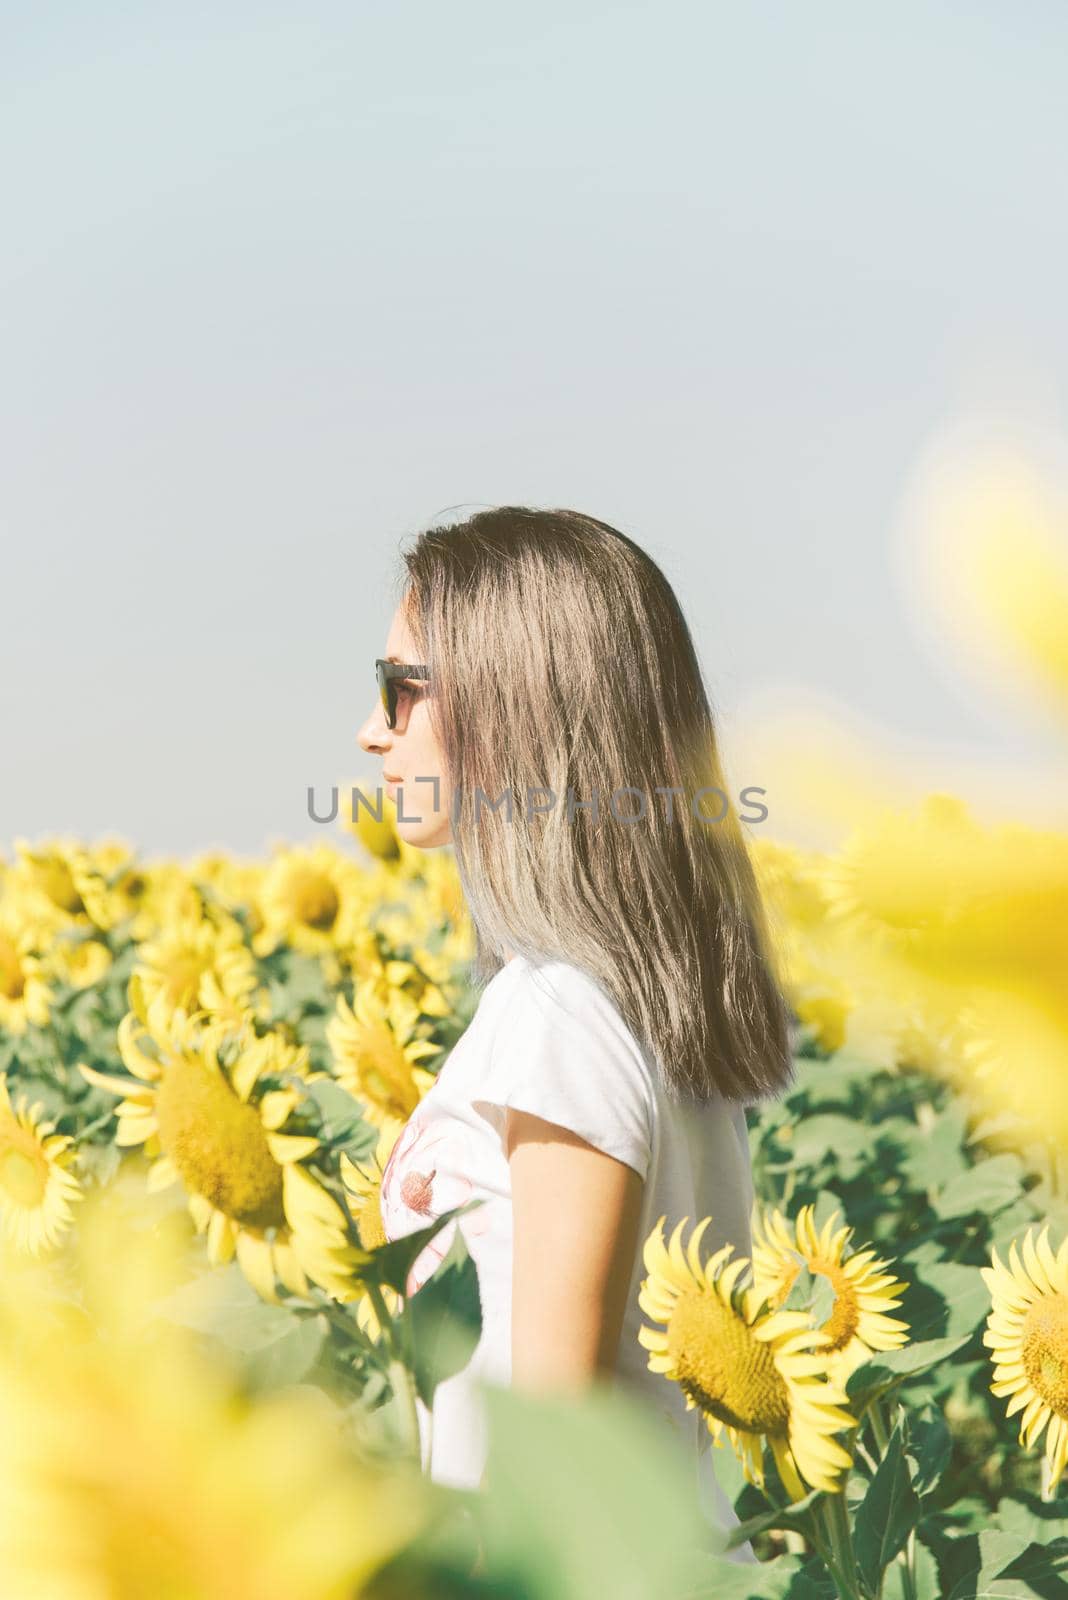 Woman standing among sunflowers. by alexAleksei